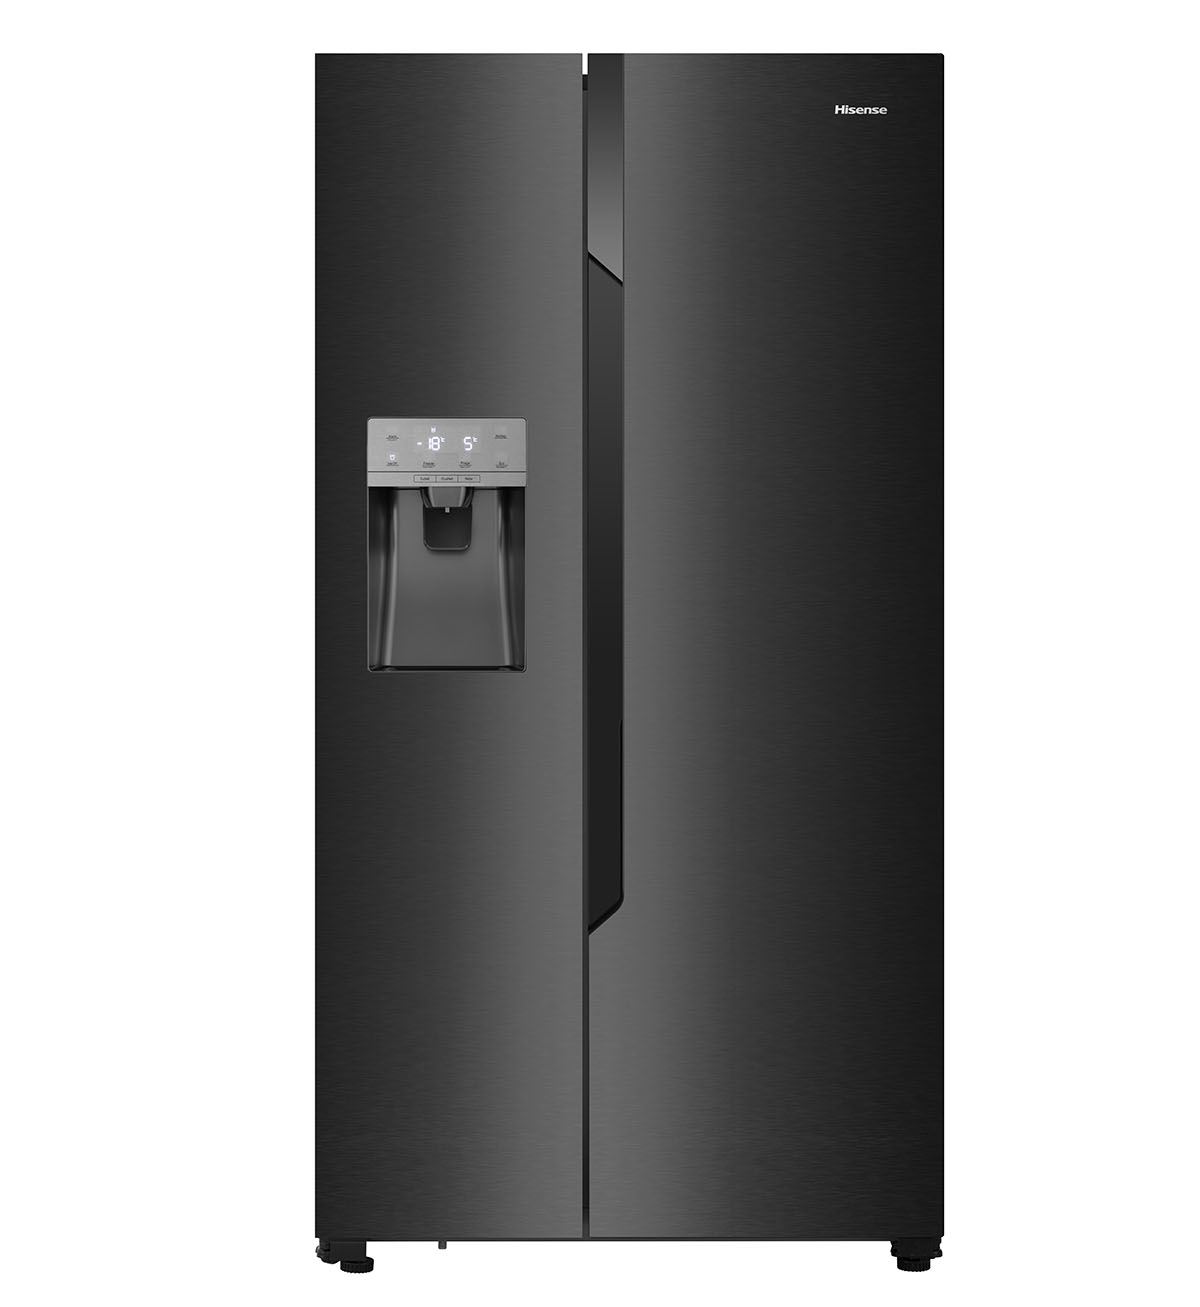 Hisense RS694N4TF2 de tipo A++, un frigorífico muy eficiente y completo